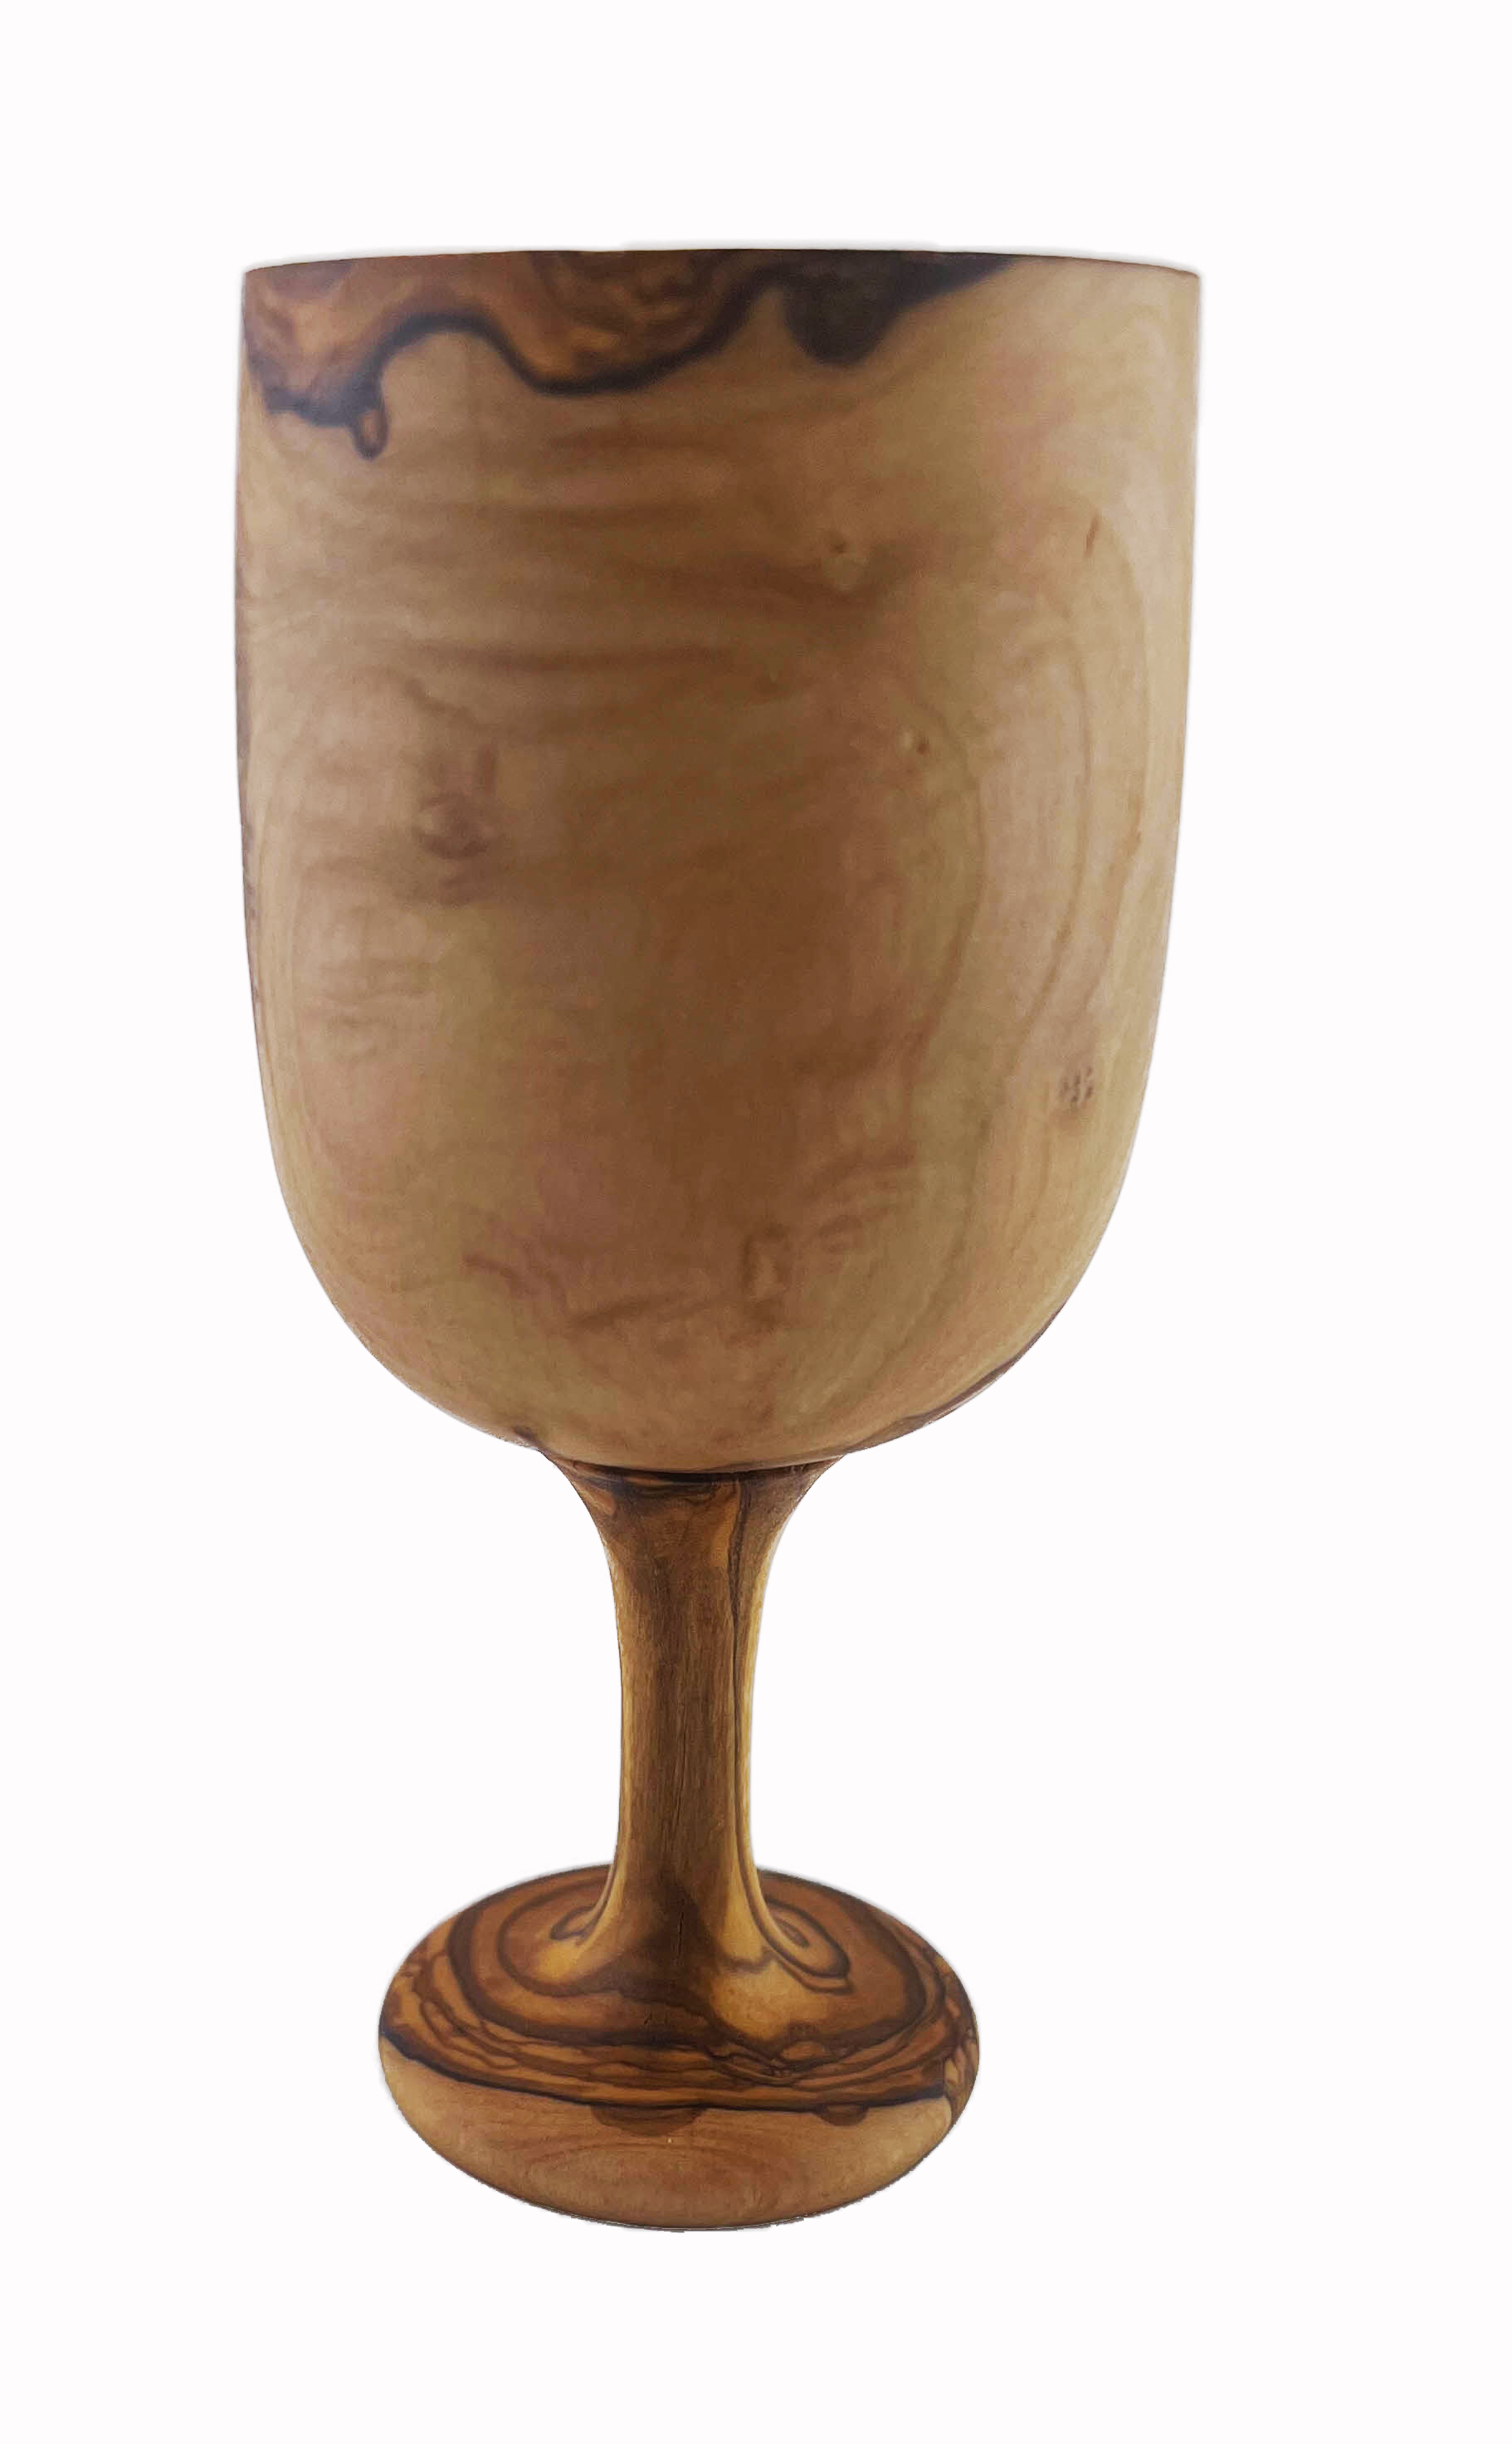 Bicchiere da bere in legno d'olivo alto 15 cm